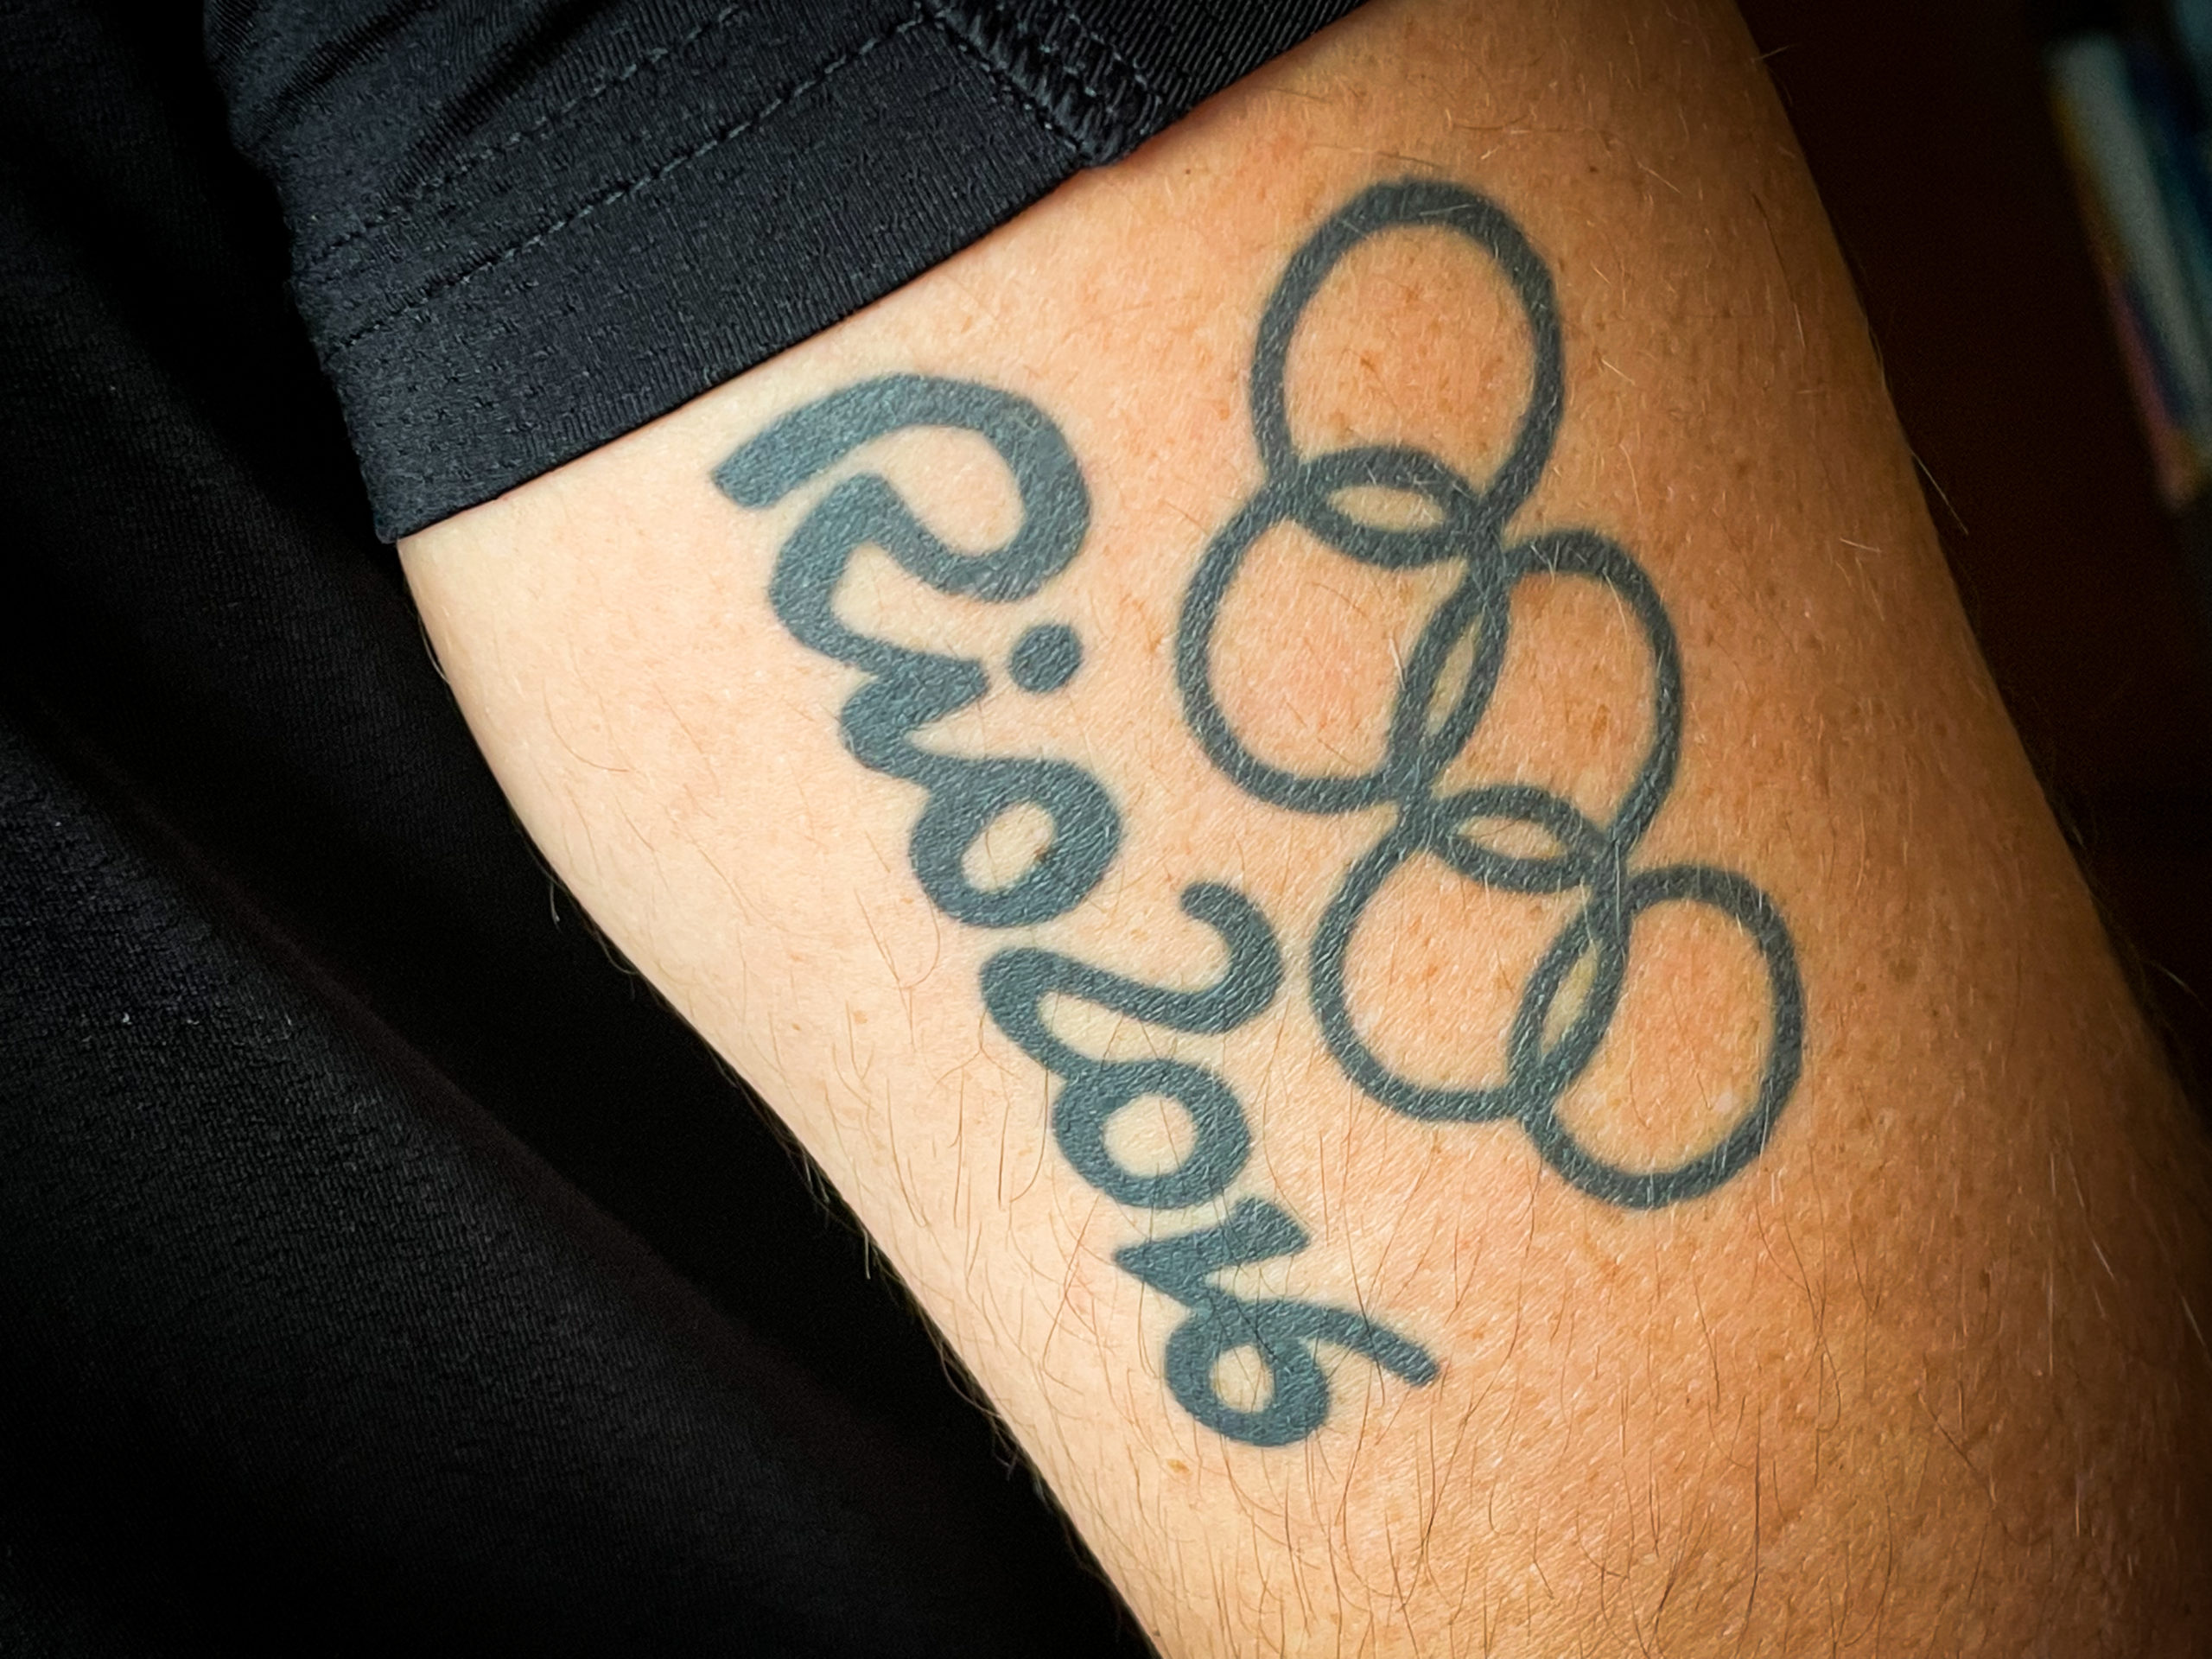 Tatuaje de Rio 2016 de Saúl Craviotto